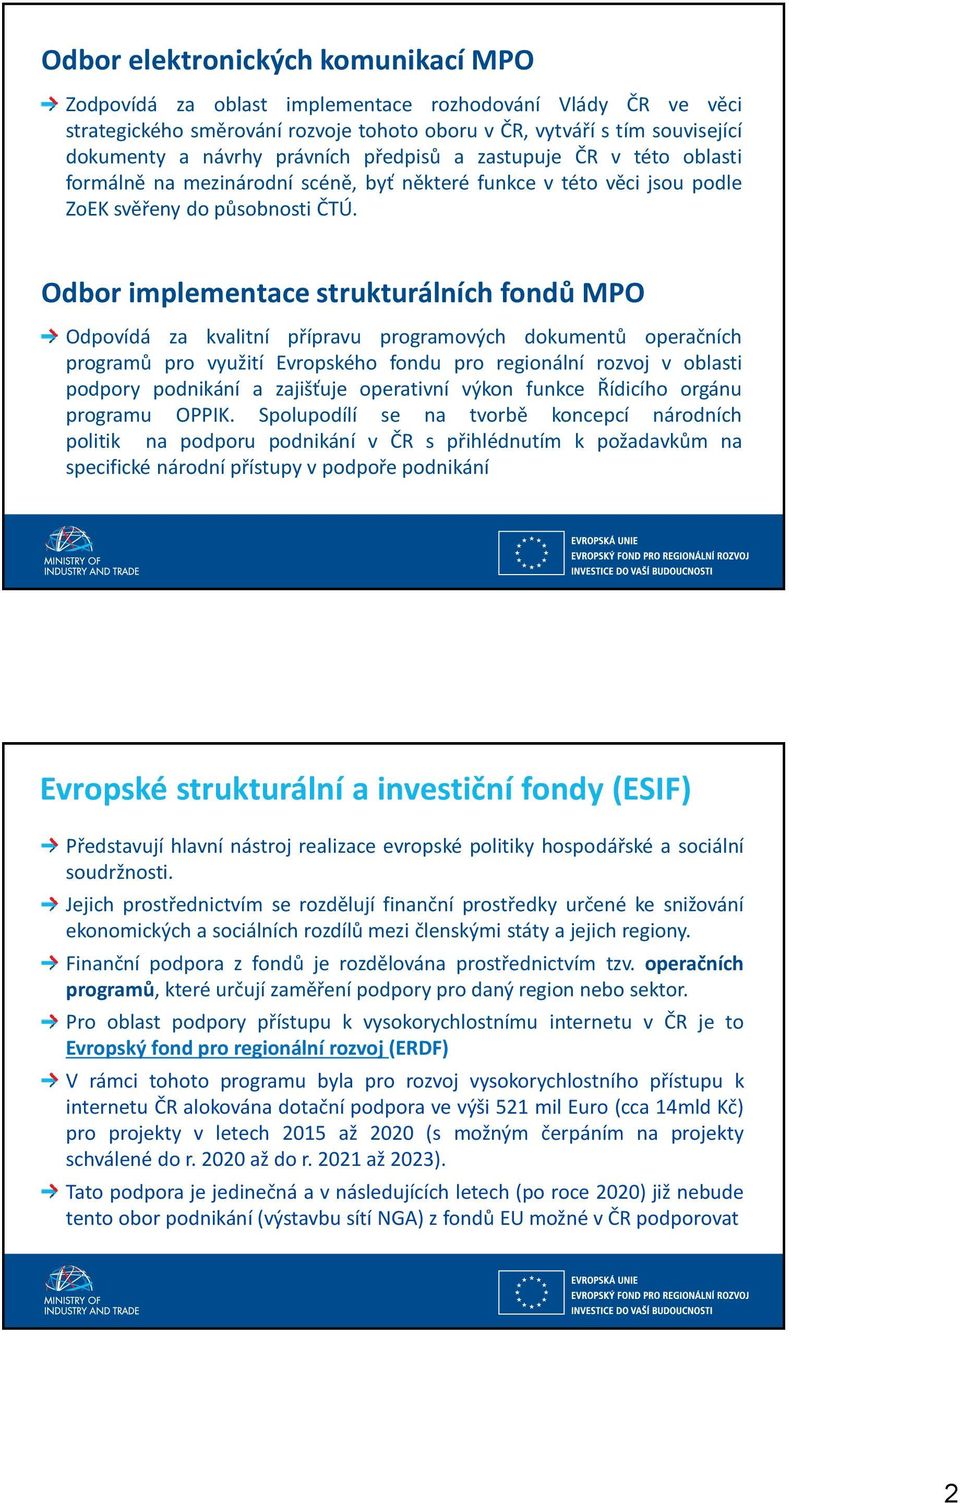 Odbor implementace strukturálních fondů MPO Odpovídá za kvalitní přípravu programových dokumentů operačních programů pro využití Evropského fondu pro regionální rozvoj v oblasti podpory podnikání a